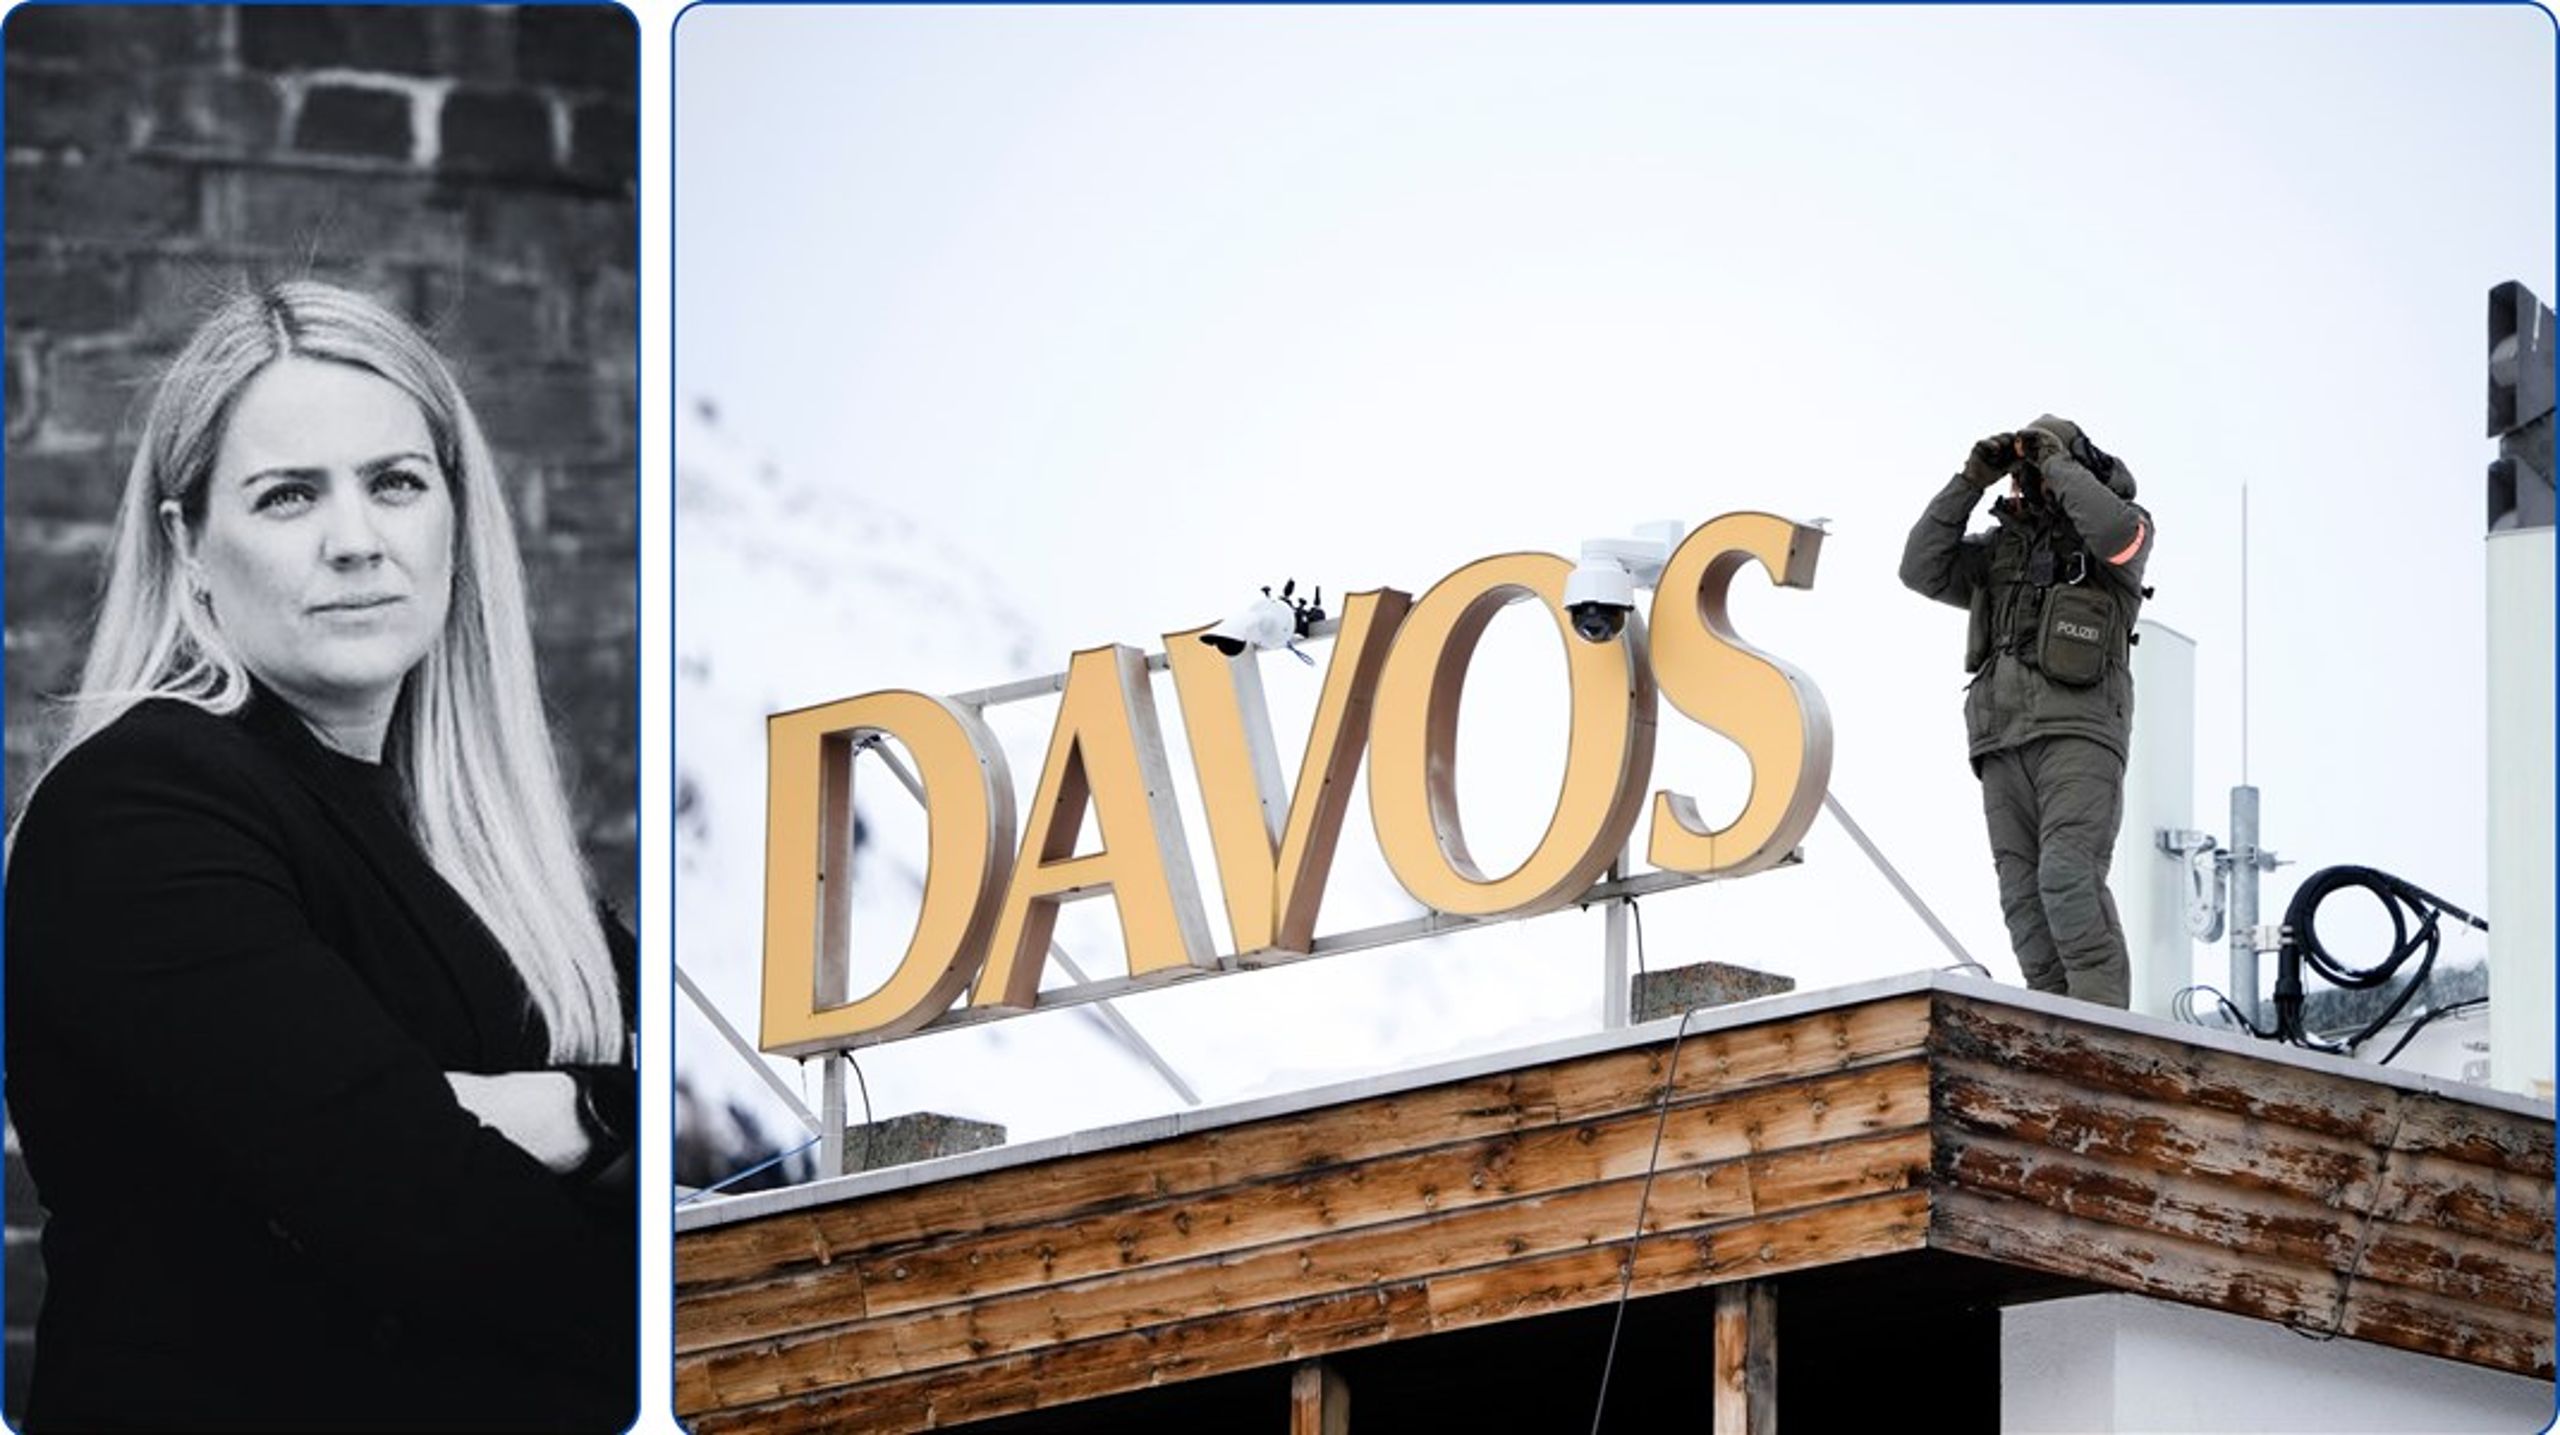 Årets Davos-toppmøte har satt tillit på agendaen. Men gjengen som gjester Davos sliter også med tilliten, skriver Hannah Gitmark, spaltist i Altinget.